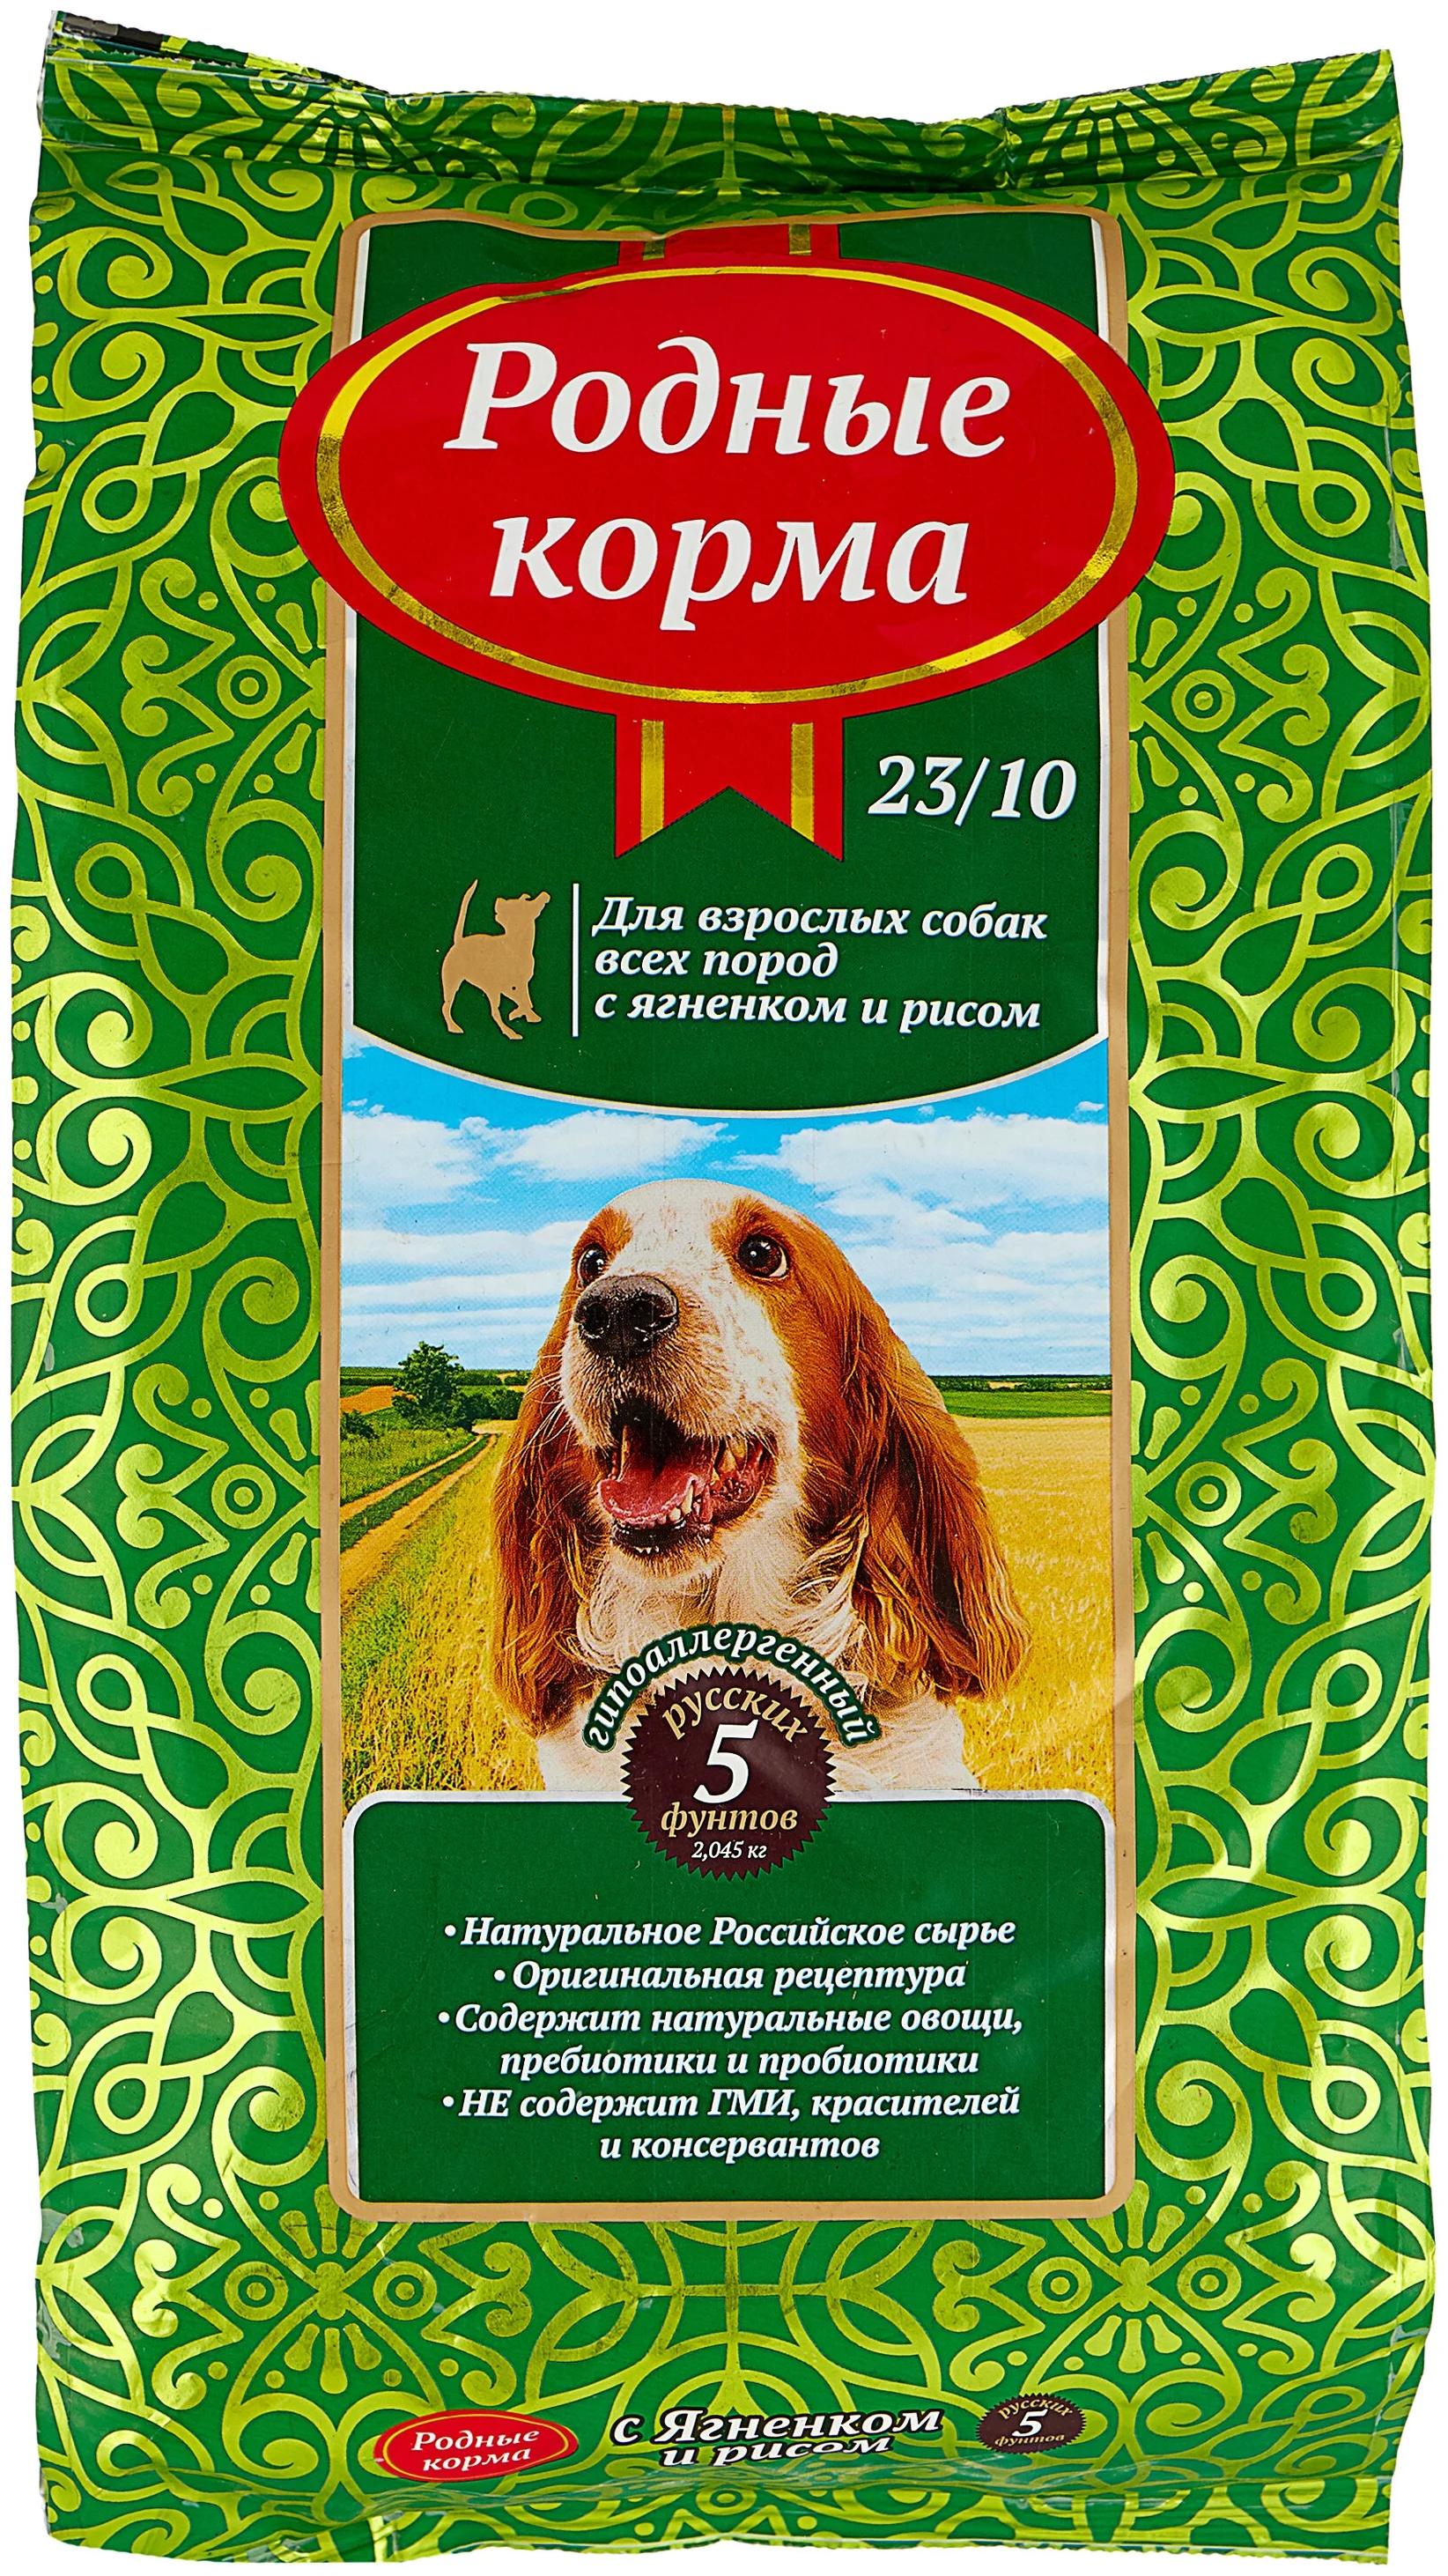 ПАК_6 РОДНЫЕ КОРМА 23/10 5 русских фунтов 2,045 кг сухой корм для взрослых собак ягненок